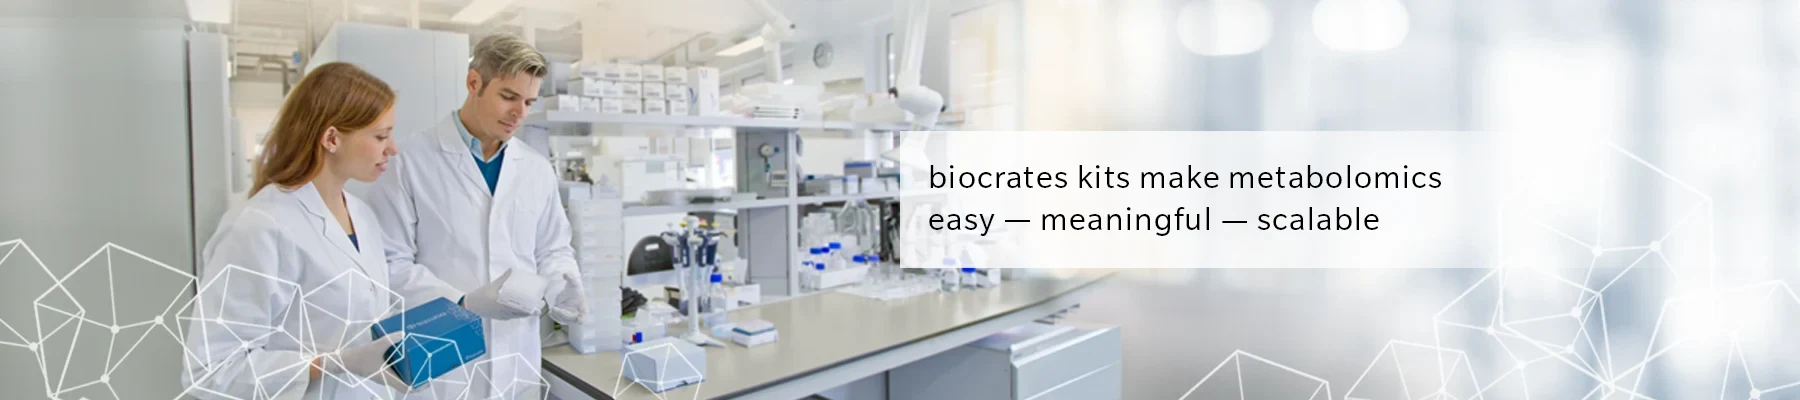 biocrates kits